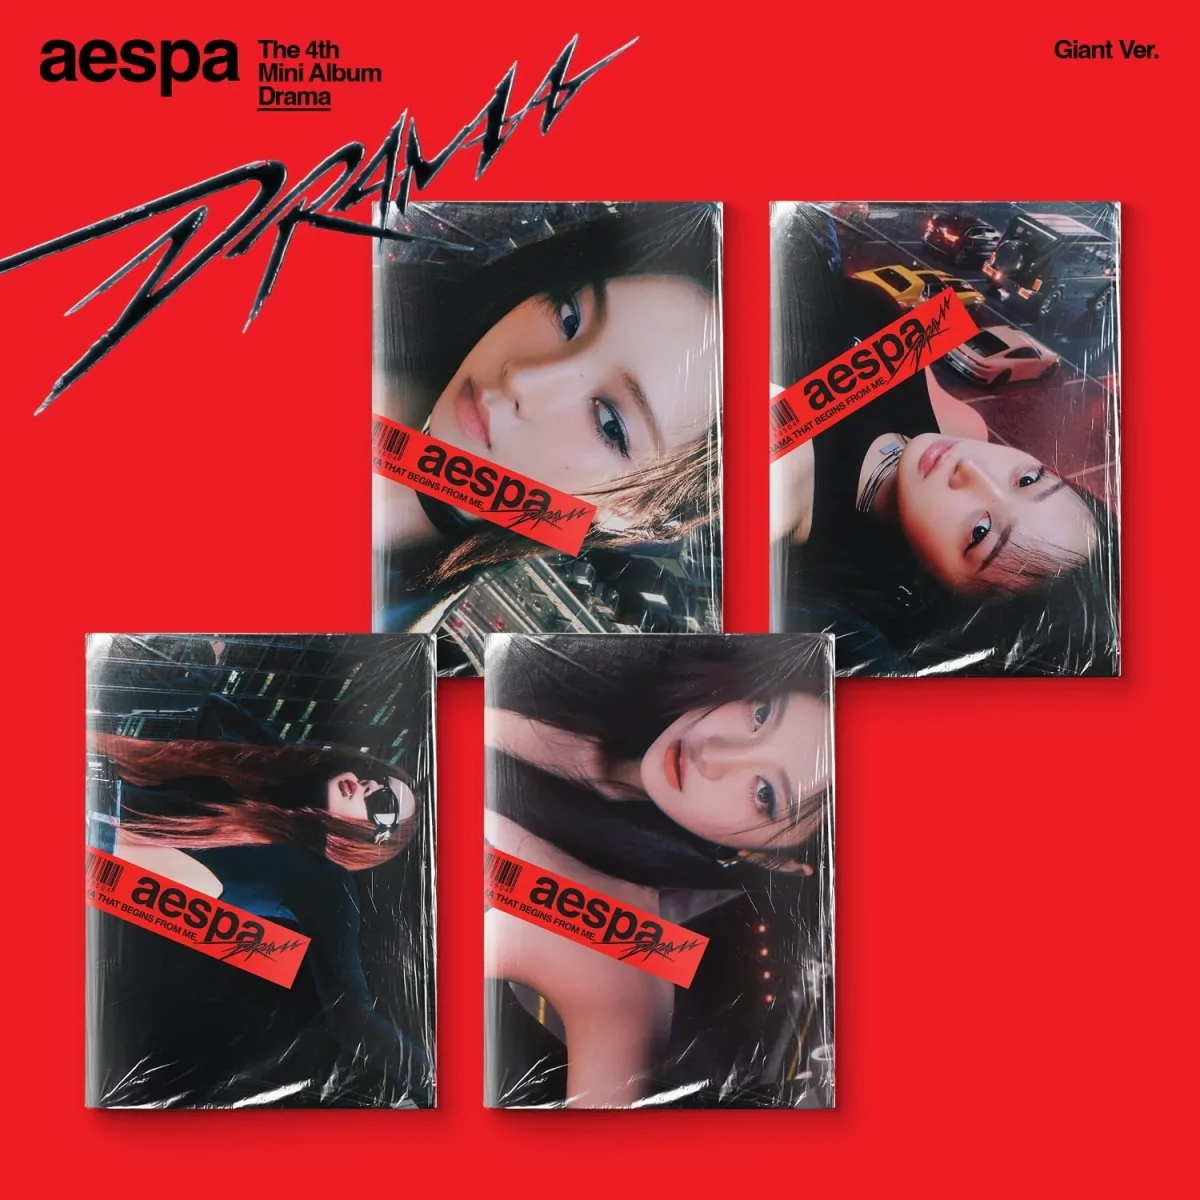 aespa - Drama (Giant Giselle Version) (4th Mini Album) 